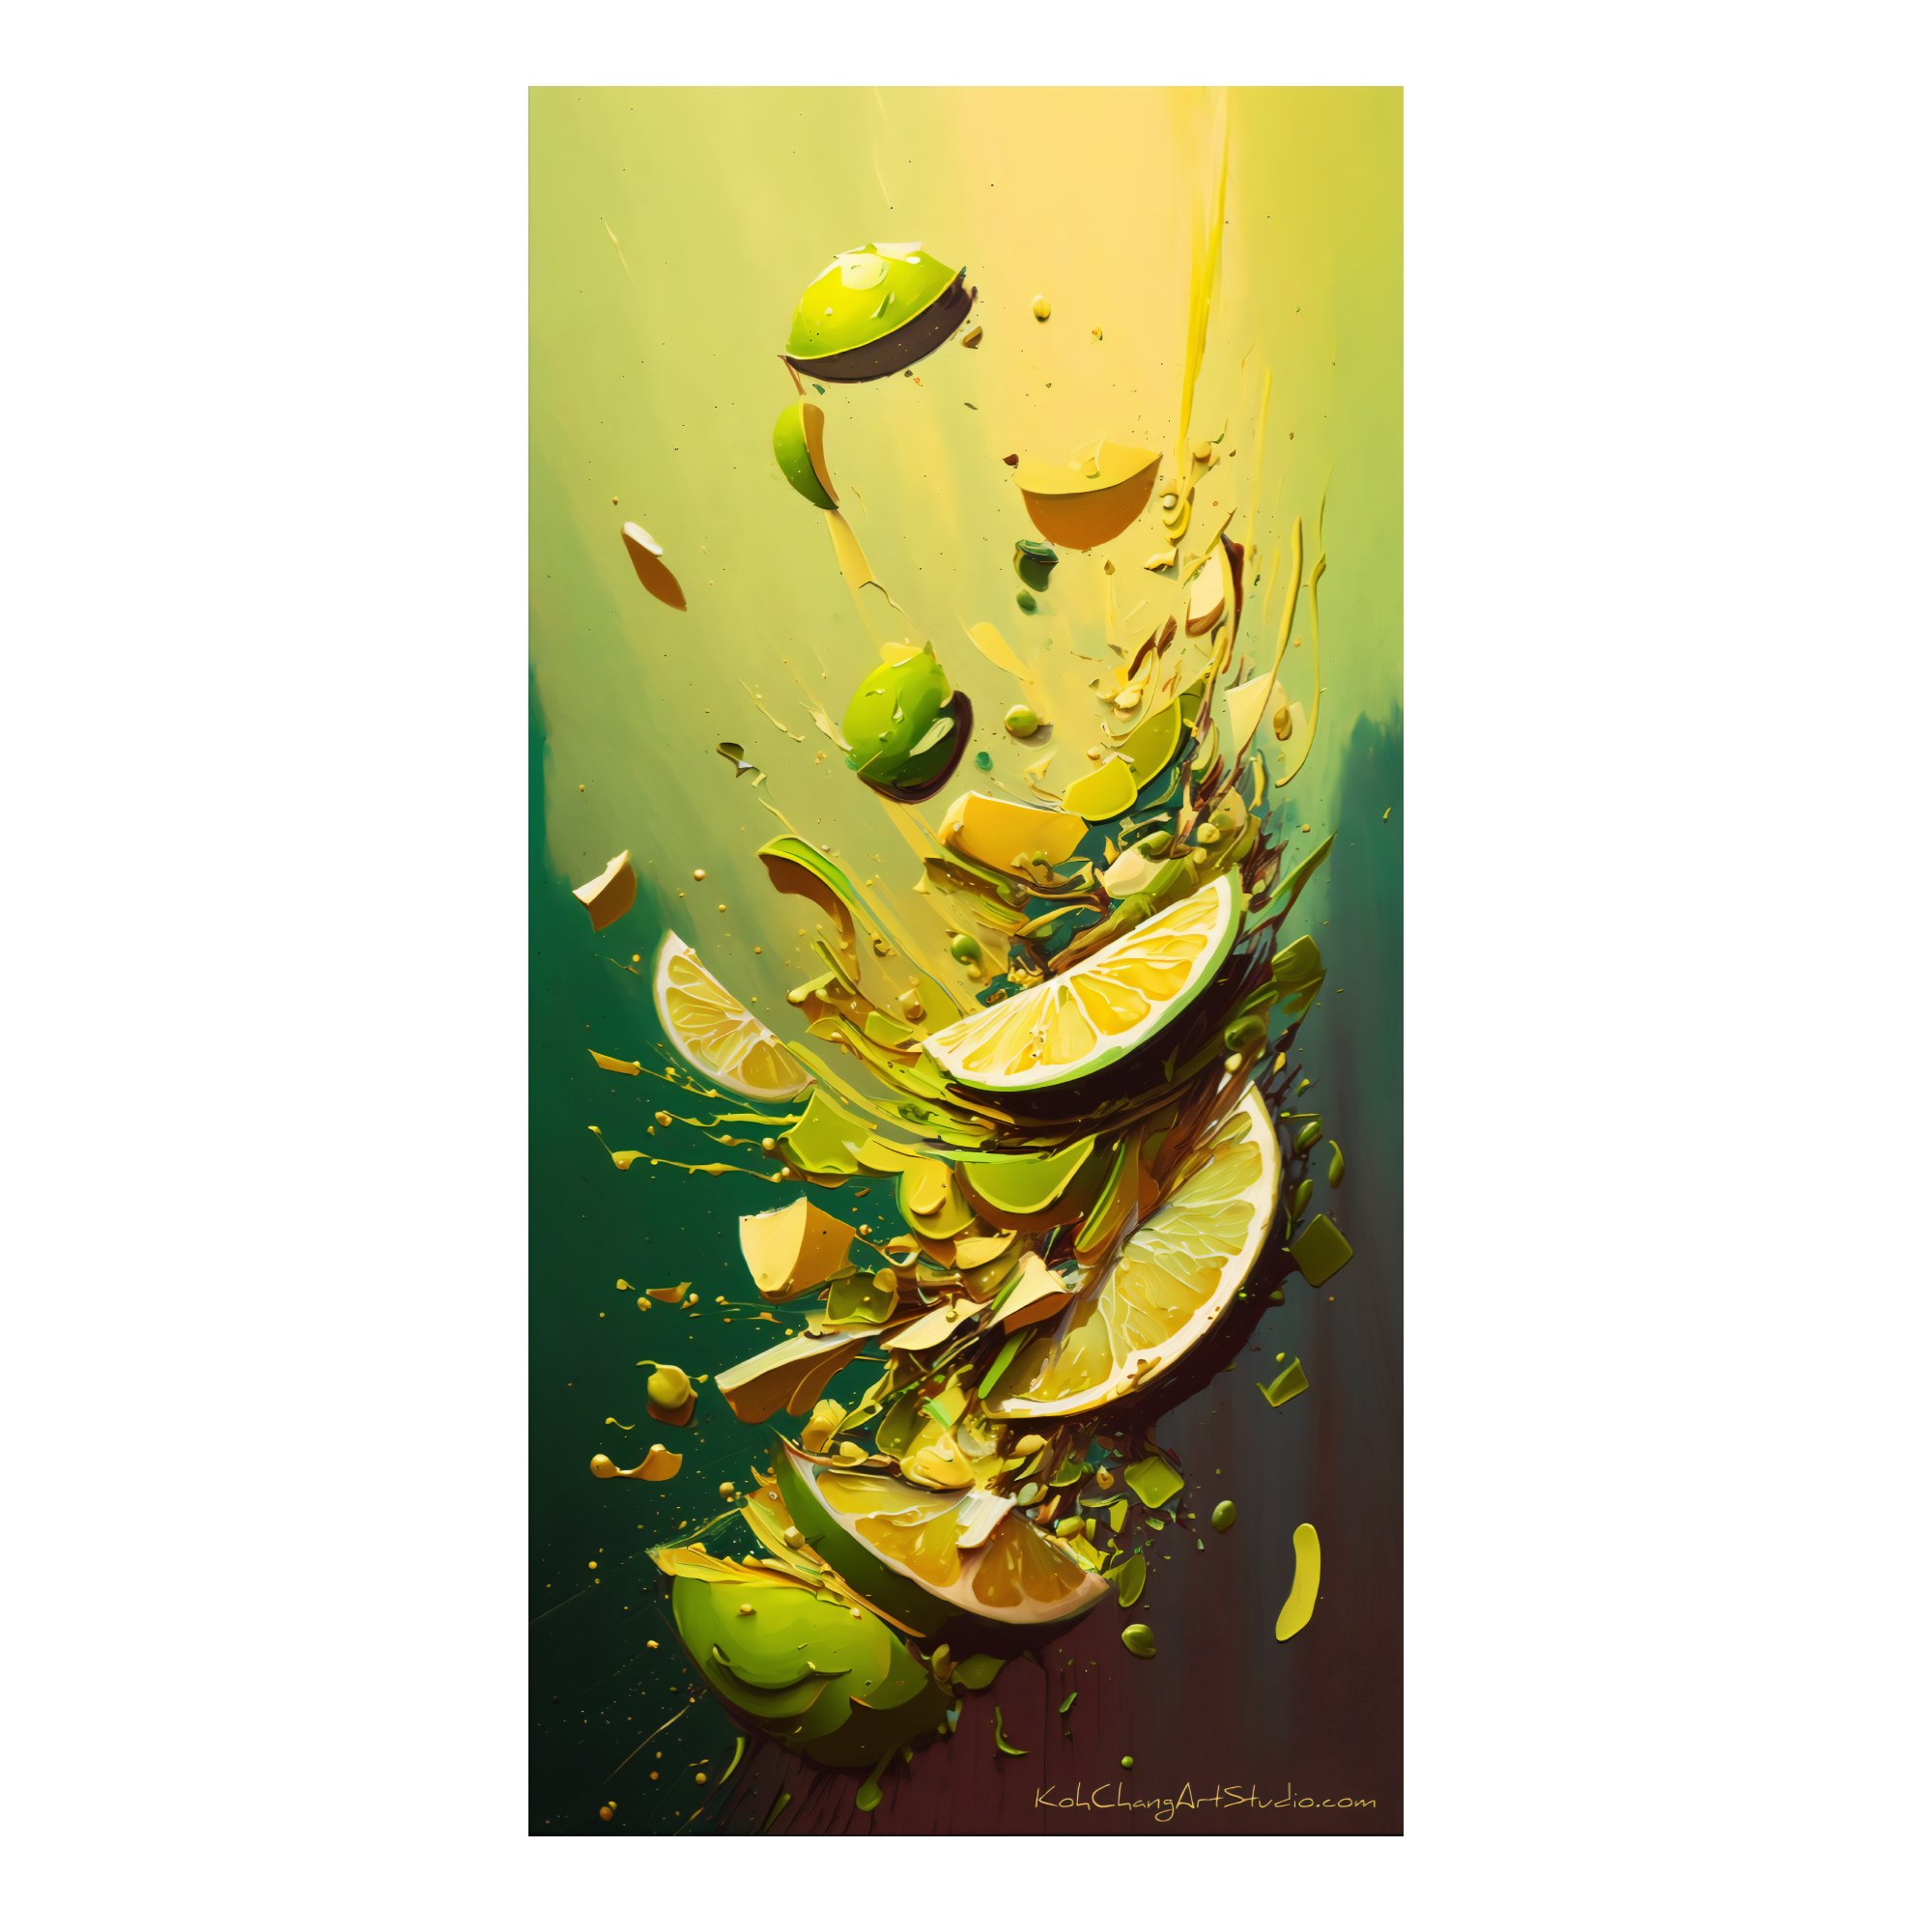 CITRUS SPLASH Design - Vibrant limes and lemons mid-splash, embodying summer's tangy essence.